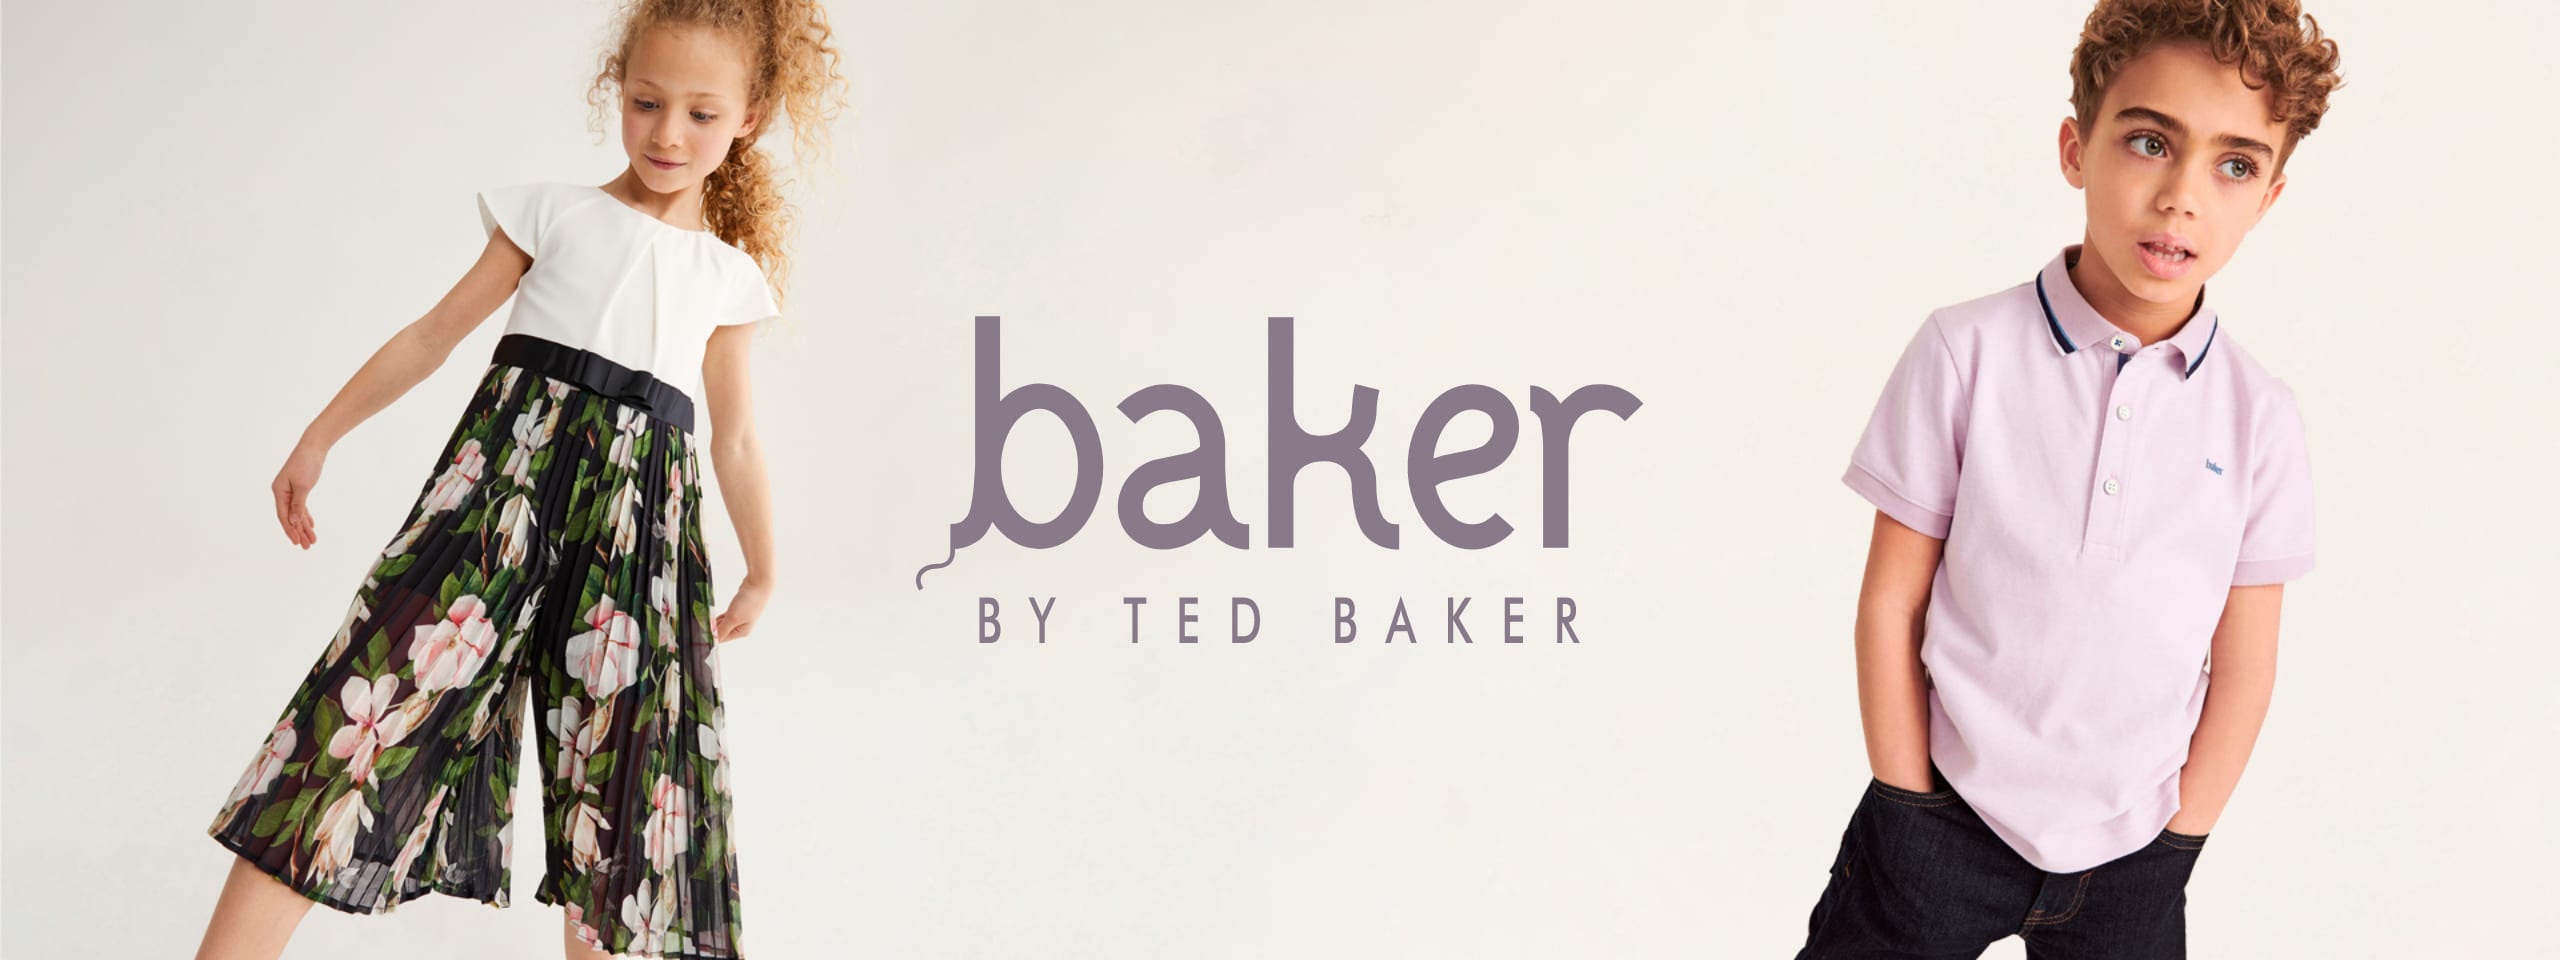 ted baker baby clothing uk